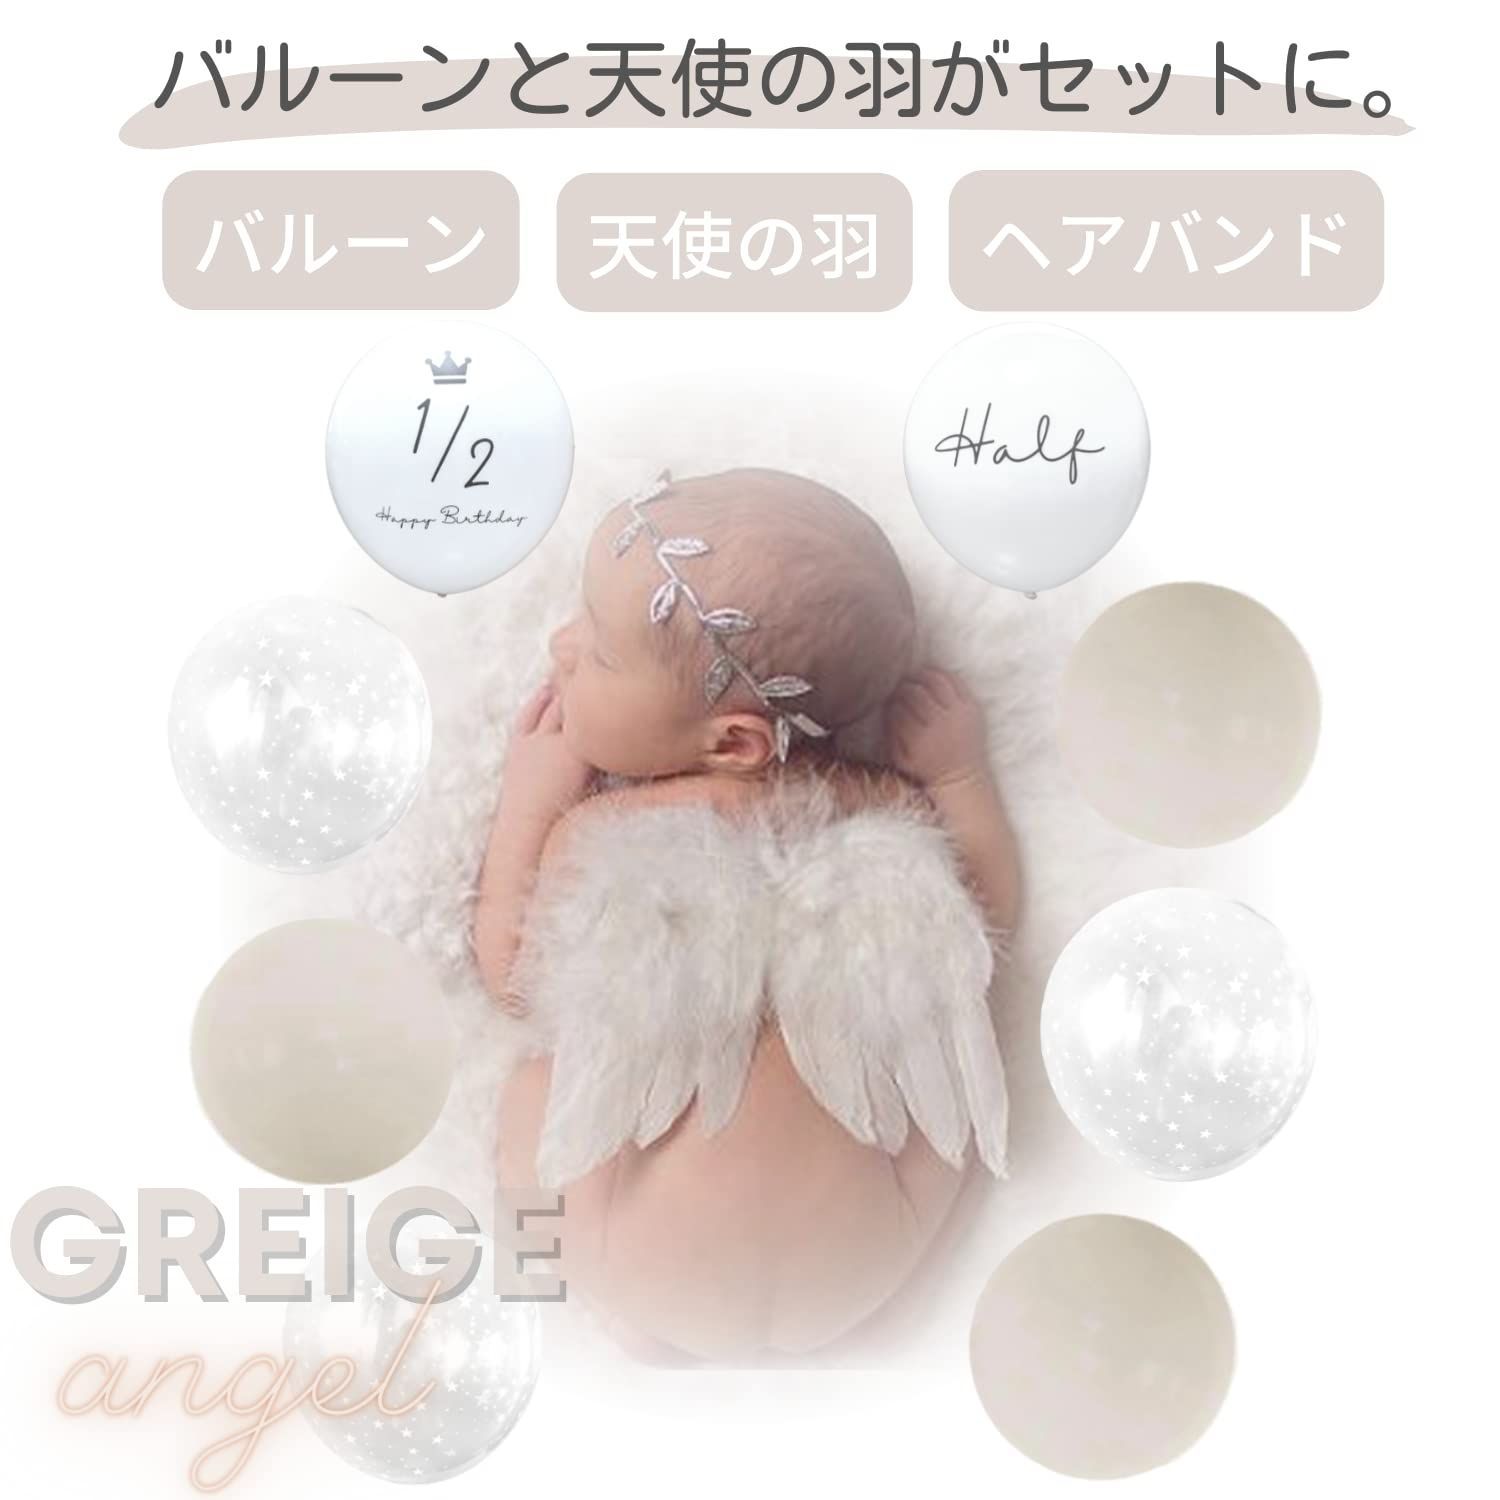 La Kissa ハーフバースデー 飾り 男の子 女の子 天使の羽 赤ちゃん